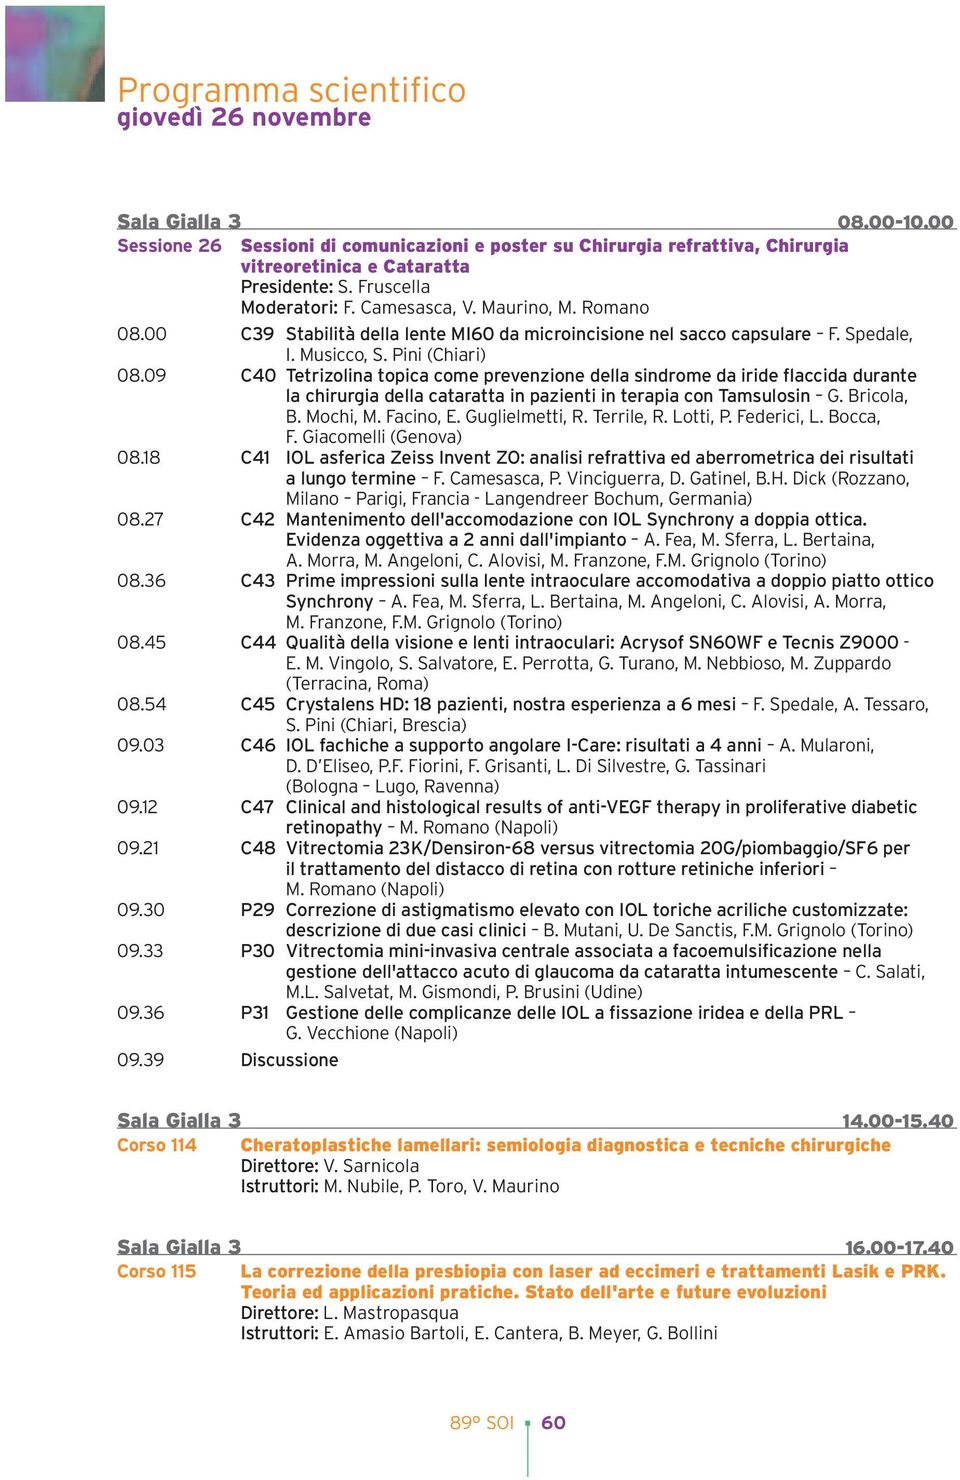 09 C40 Tetrizolina topica come prevenzione della sindrome da iride flaccida durante la chirurgia della cataratta in pazienti in terapia con Tamsulosin G. Bricola, B. Mochi, M. Facino, E.